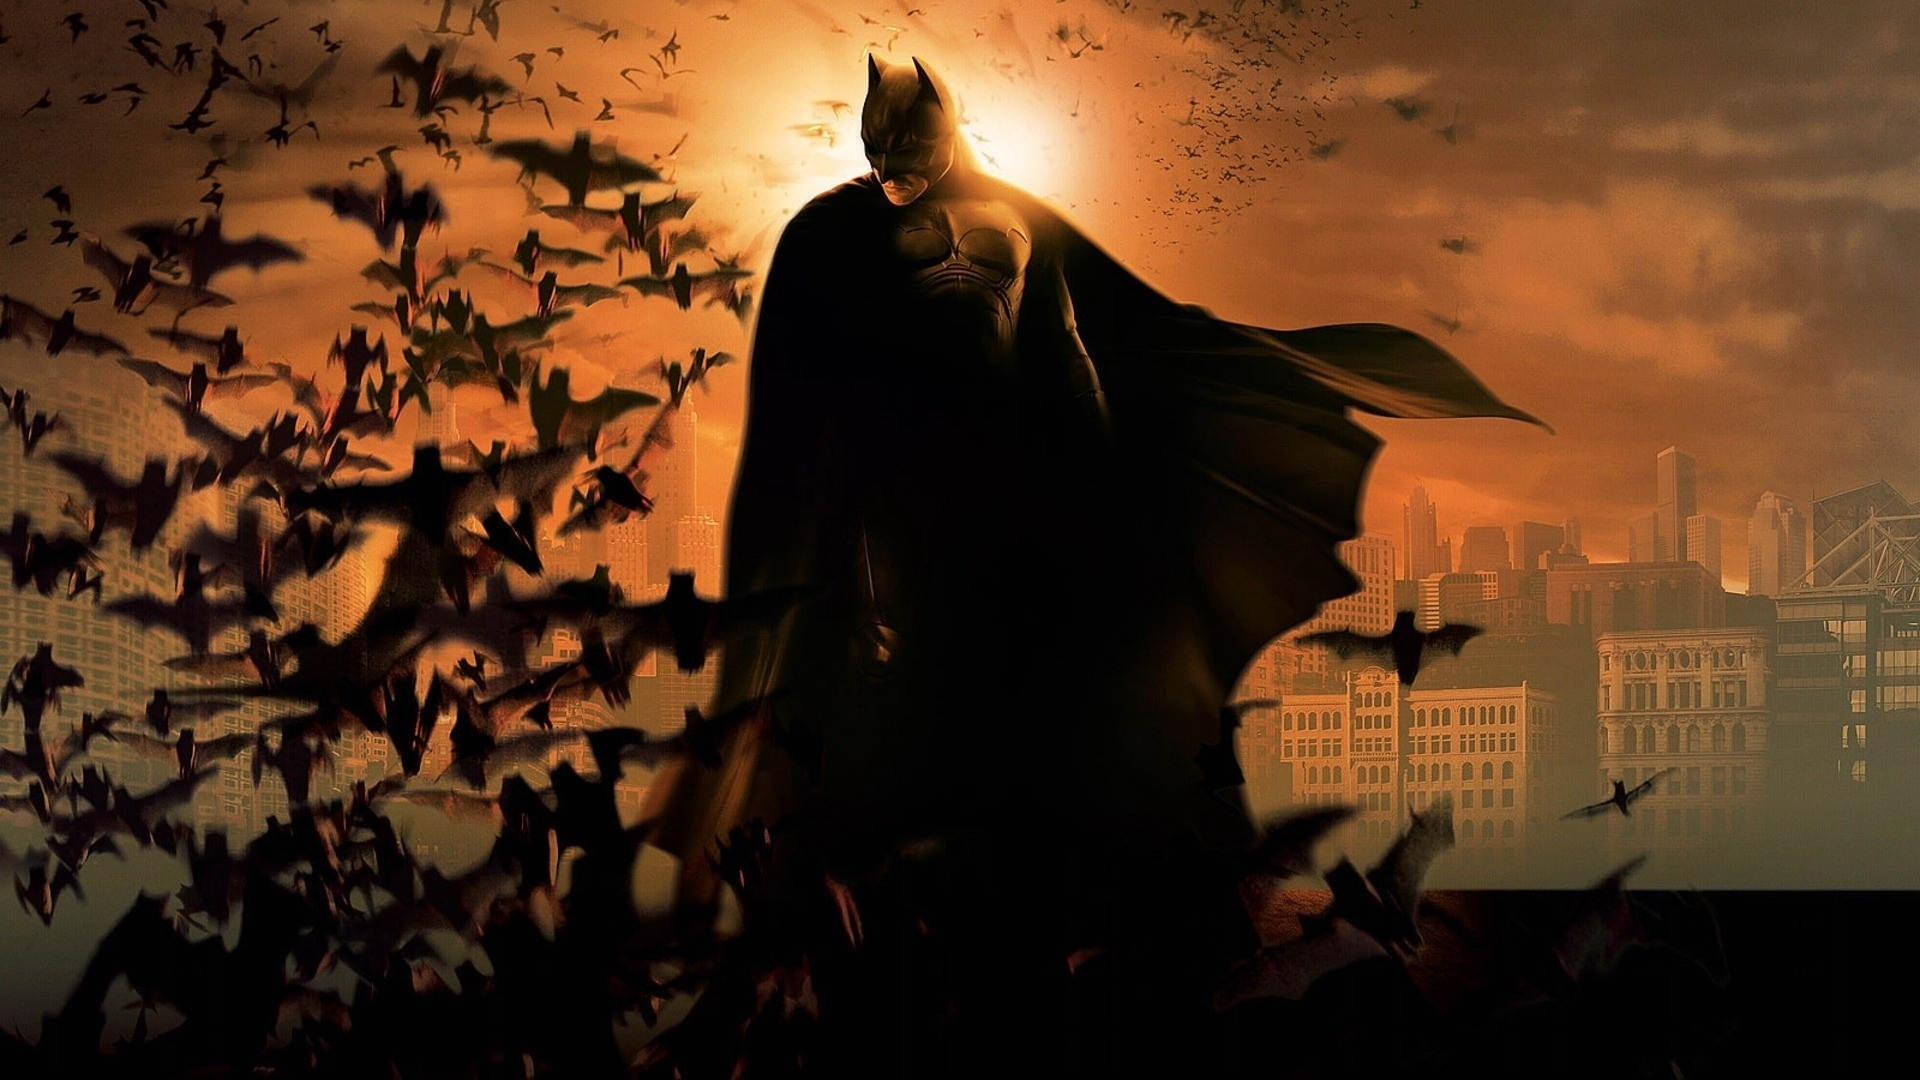 Популярные заставки и фоны Бэтмен (Batman) на компьютер